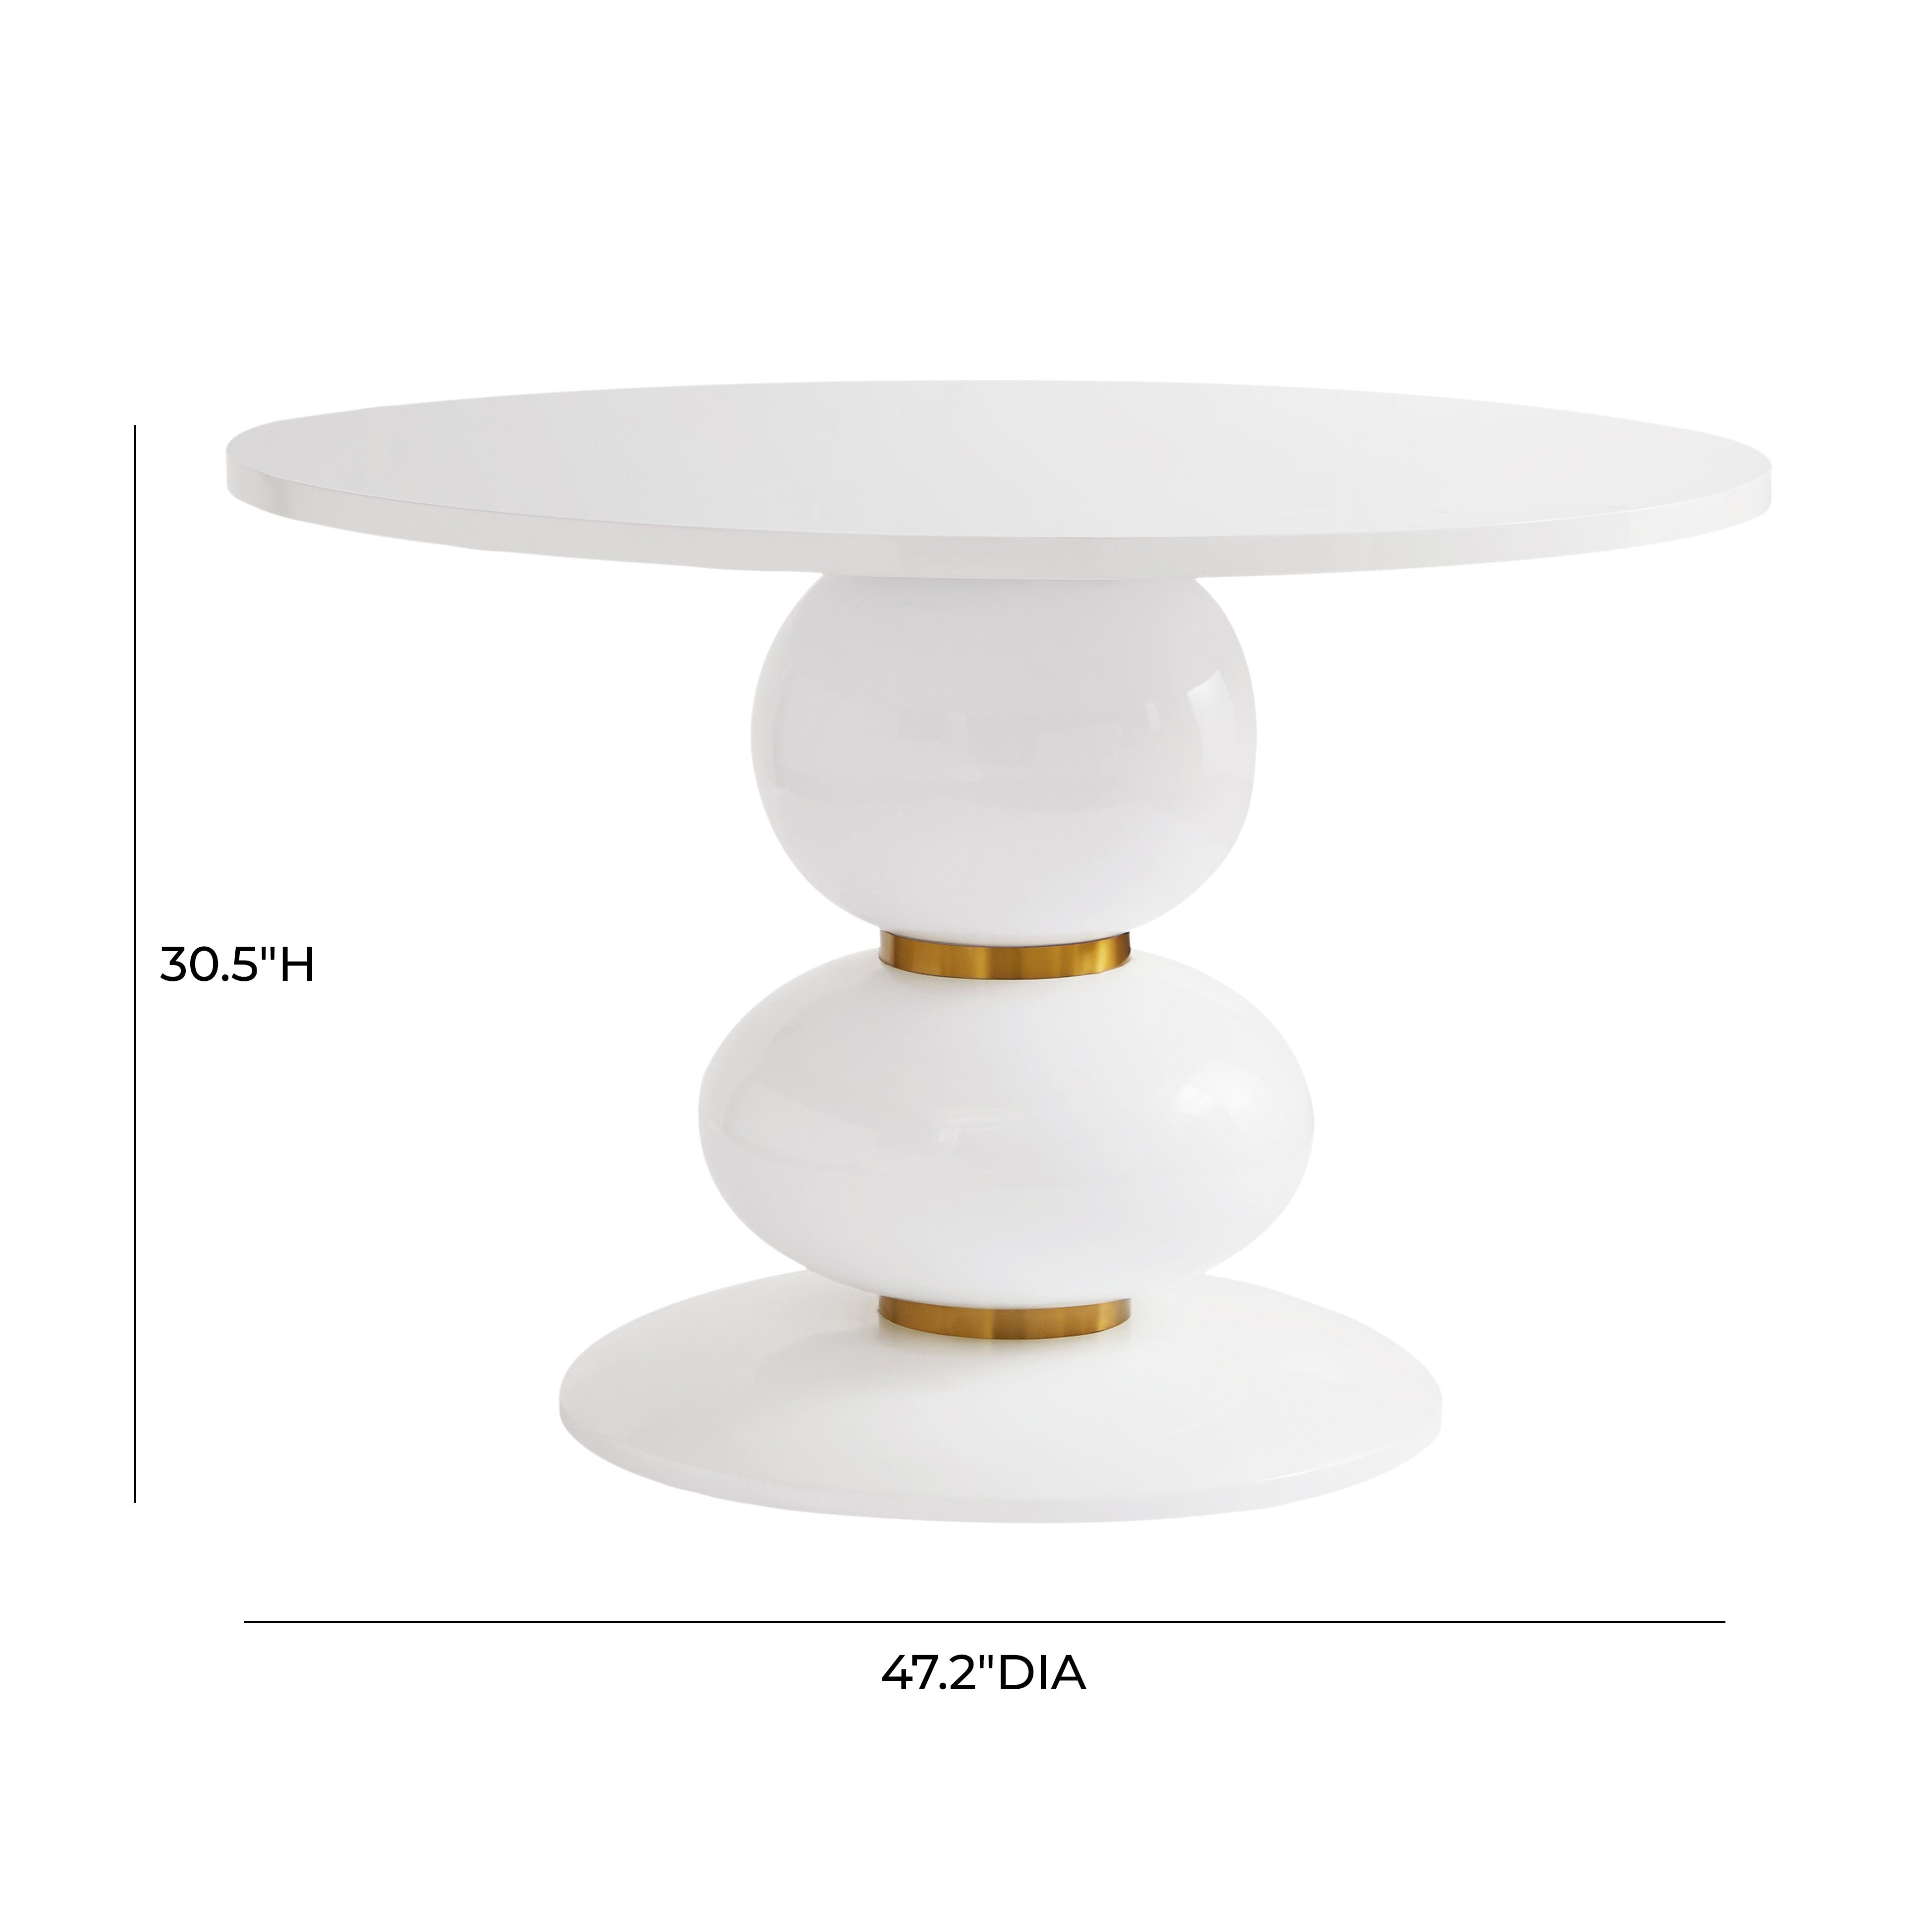 Mesa de comedor blanco redondo de 48” Blain dimensiones.